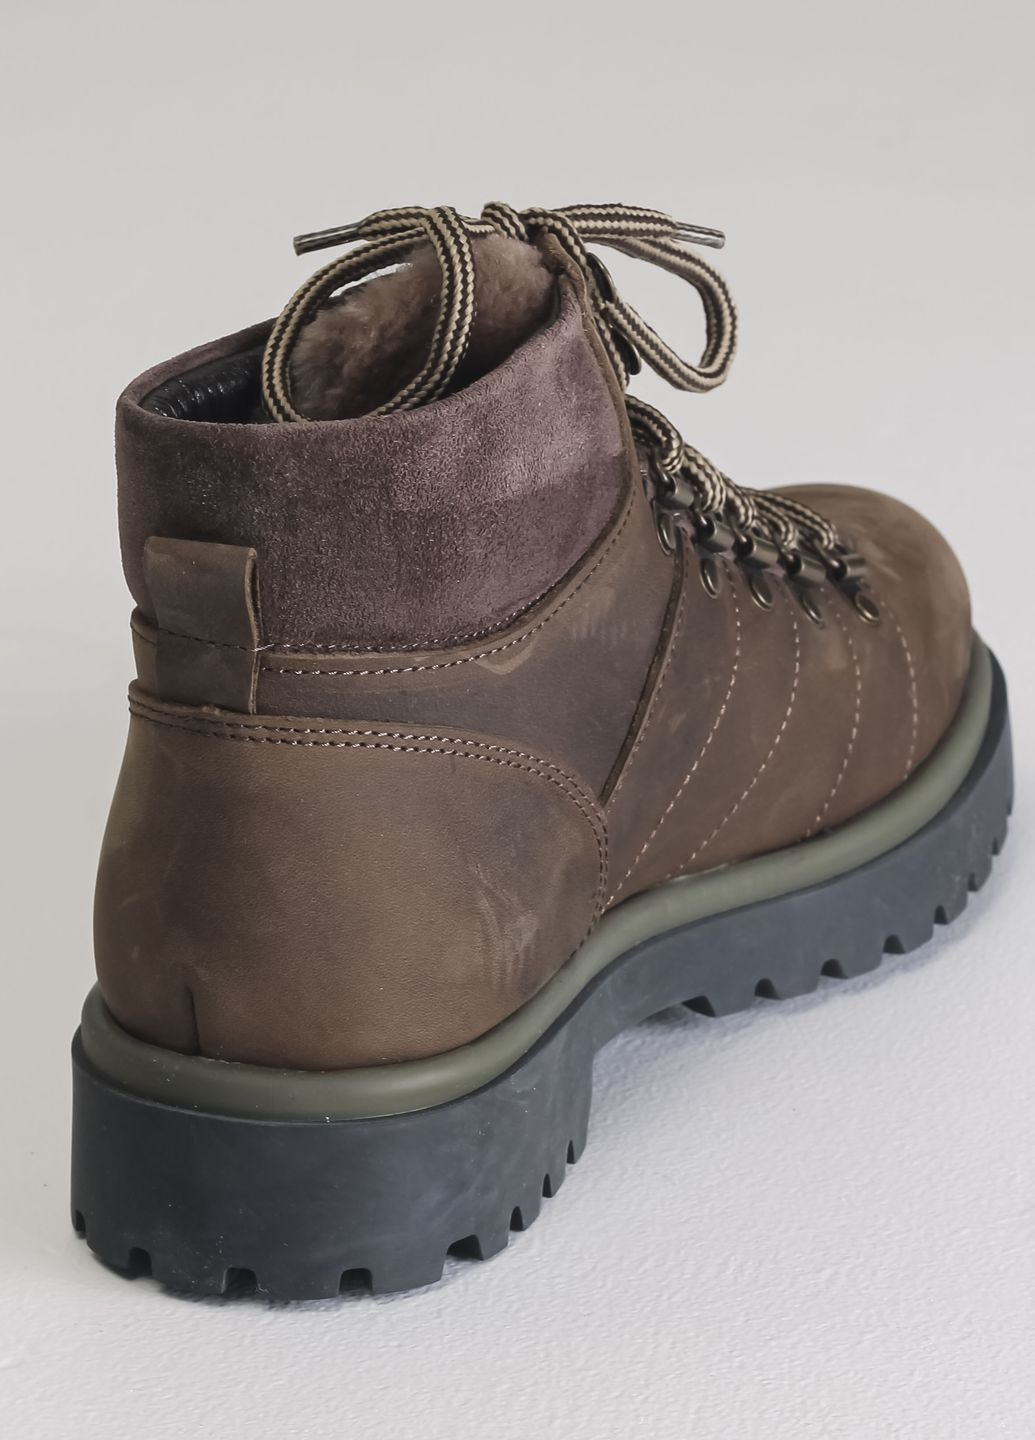 Коричневые зимние ботинки мужские коричневые нубук Pandew